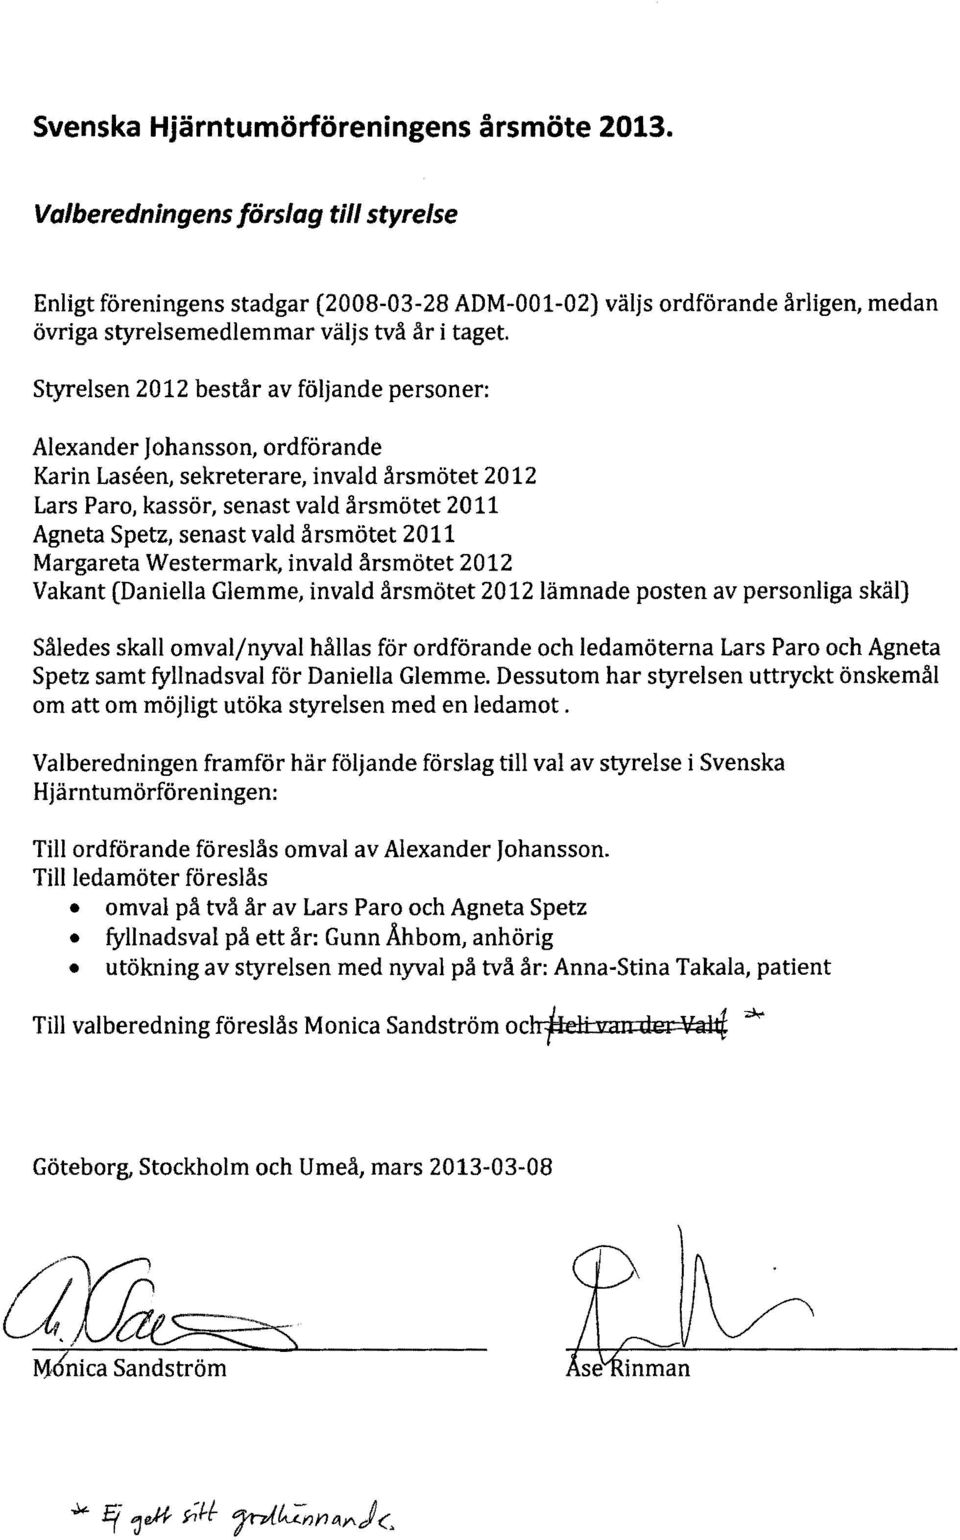 Styrelsen 2012 består av följande personer: Alexander Johansson, ordförande Karin Laseen, sekreterare, invald årsmötet 2012 Lars Paro, kassör, senast vald årsmötet 2011 Agneta Spetz, senast vald